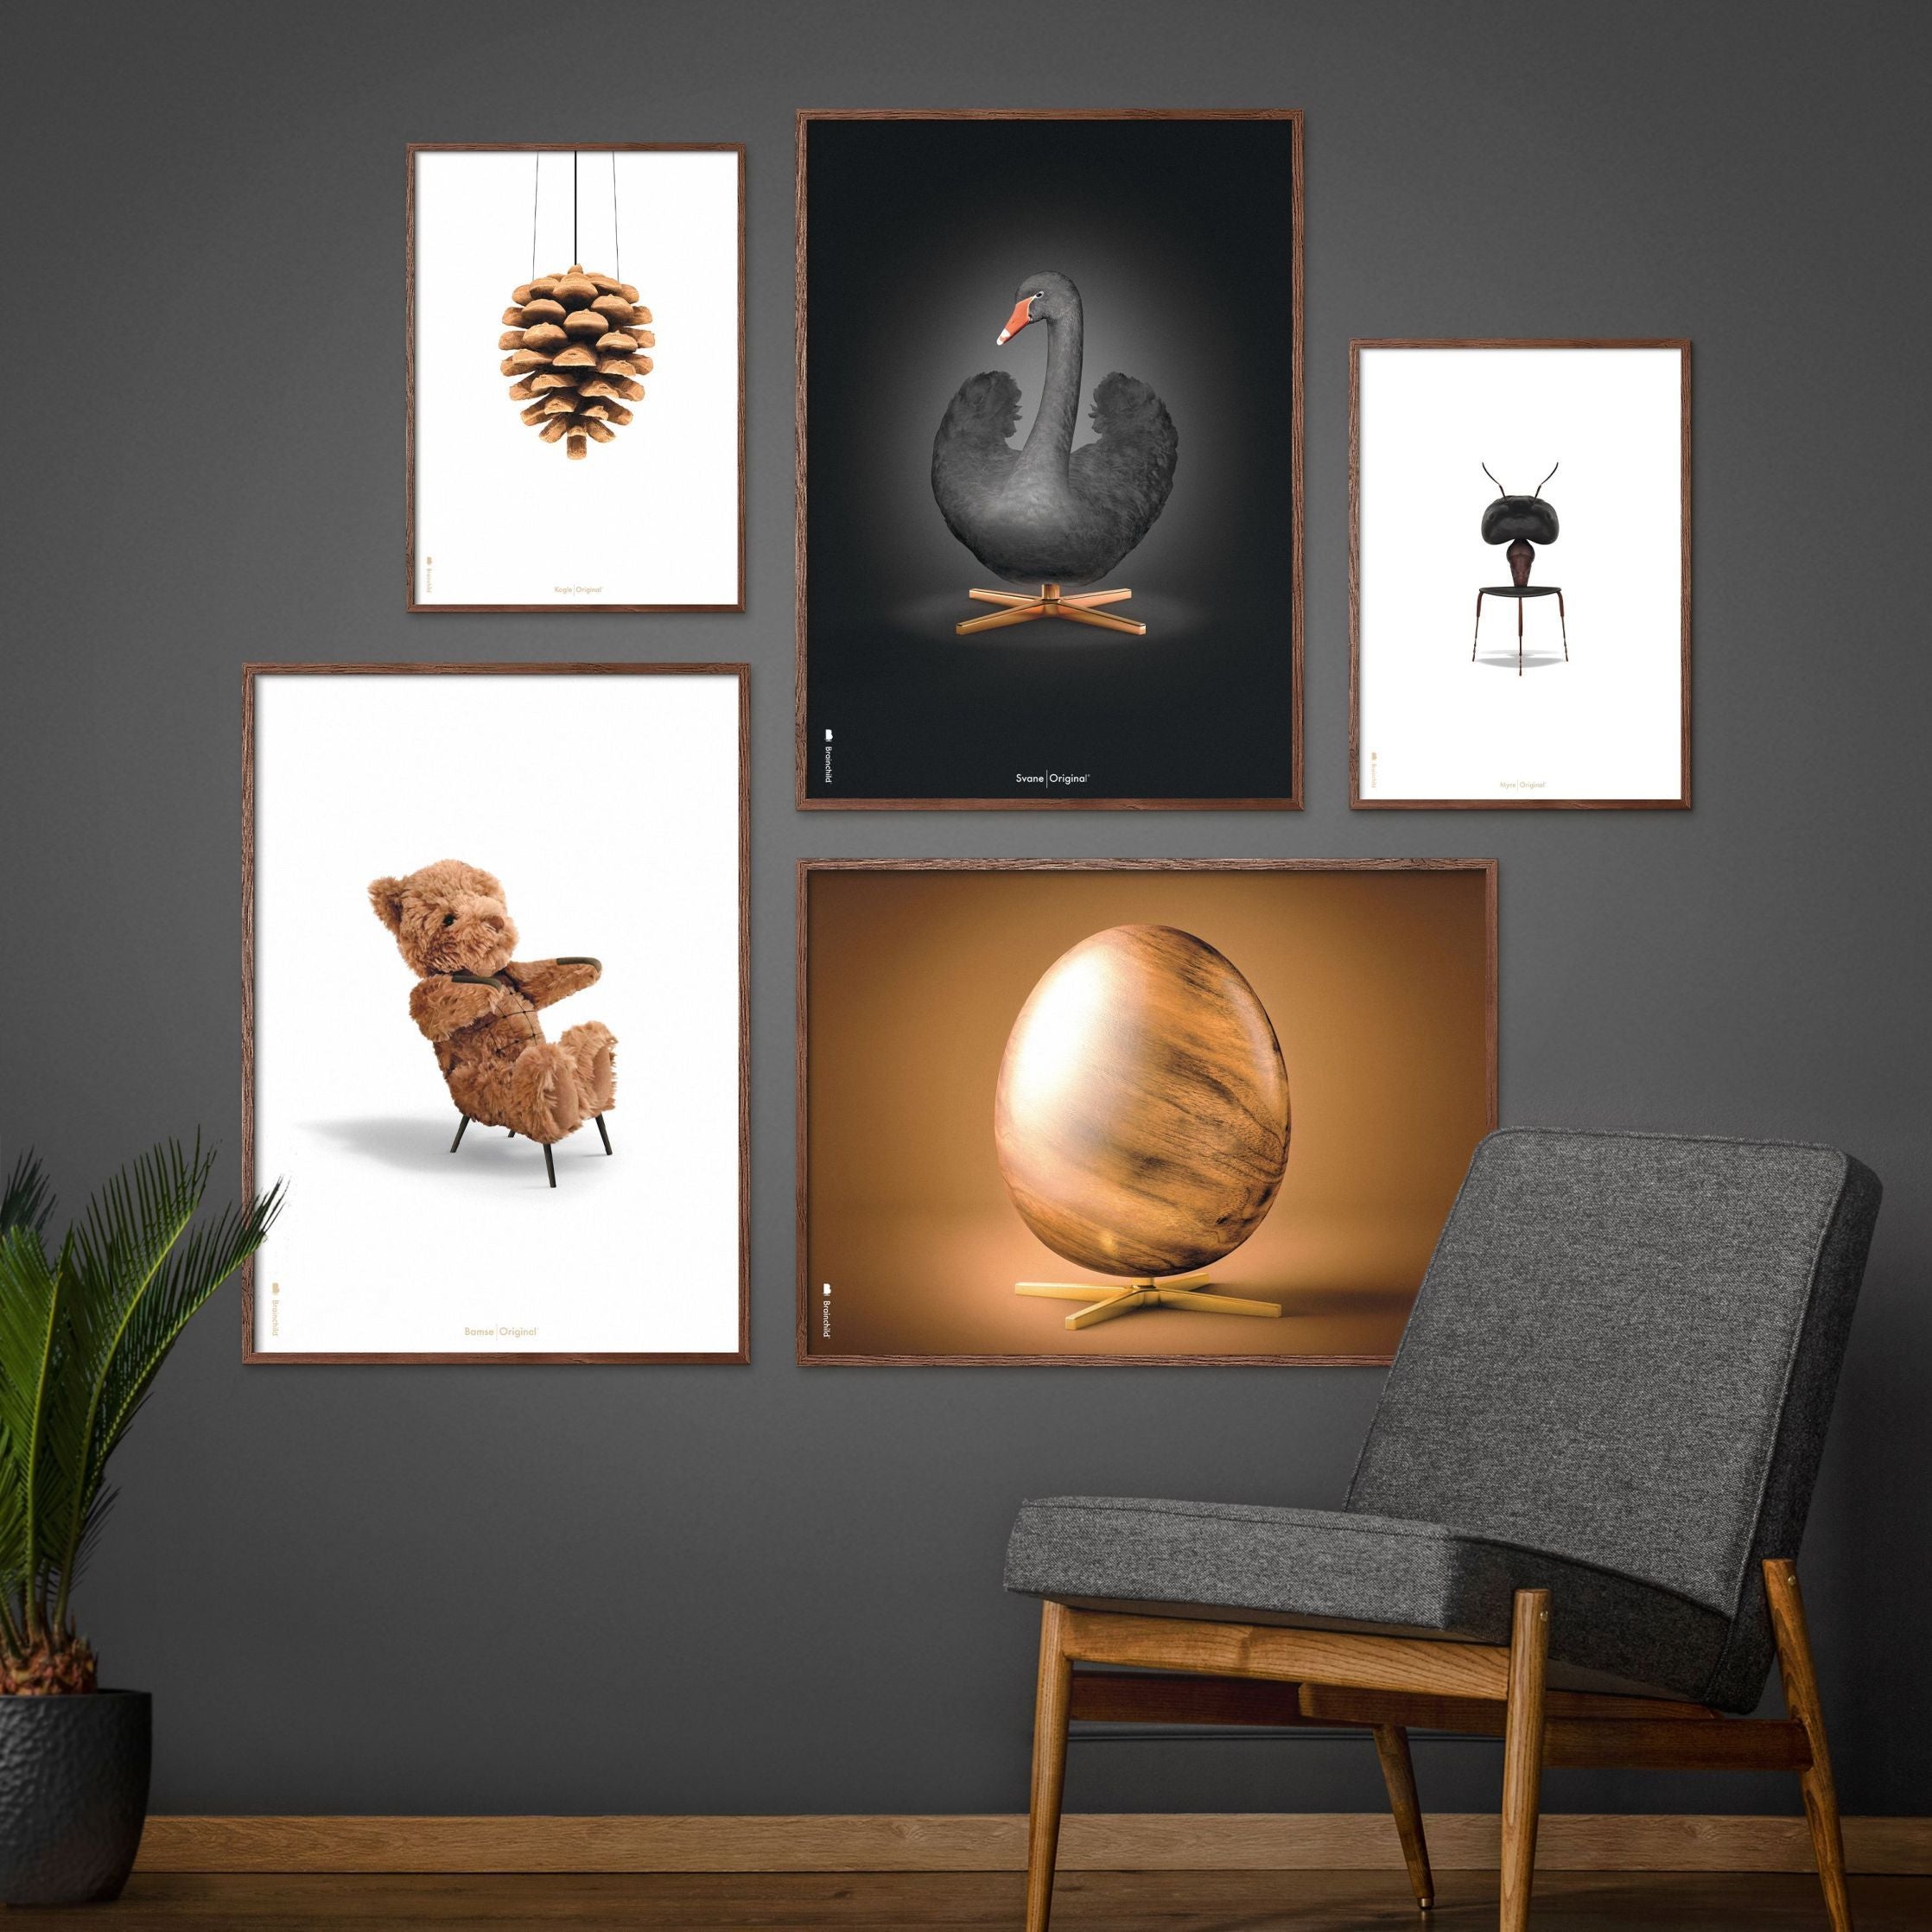 brainchild Ameisen klassisches Poster, Rahmen aus hellem Holz 30x40 cm, weißer Hintergrund